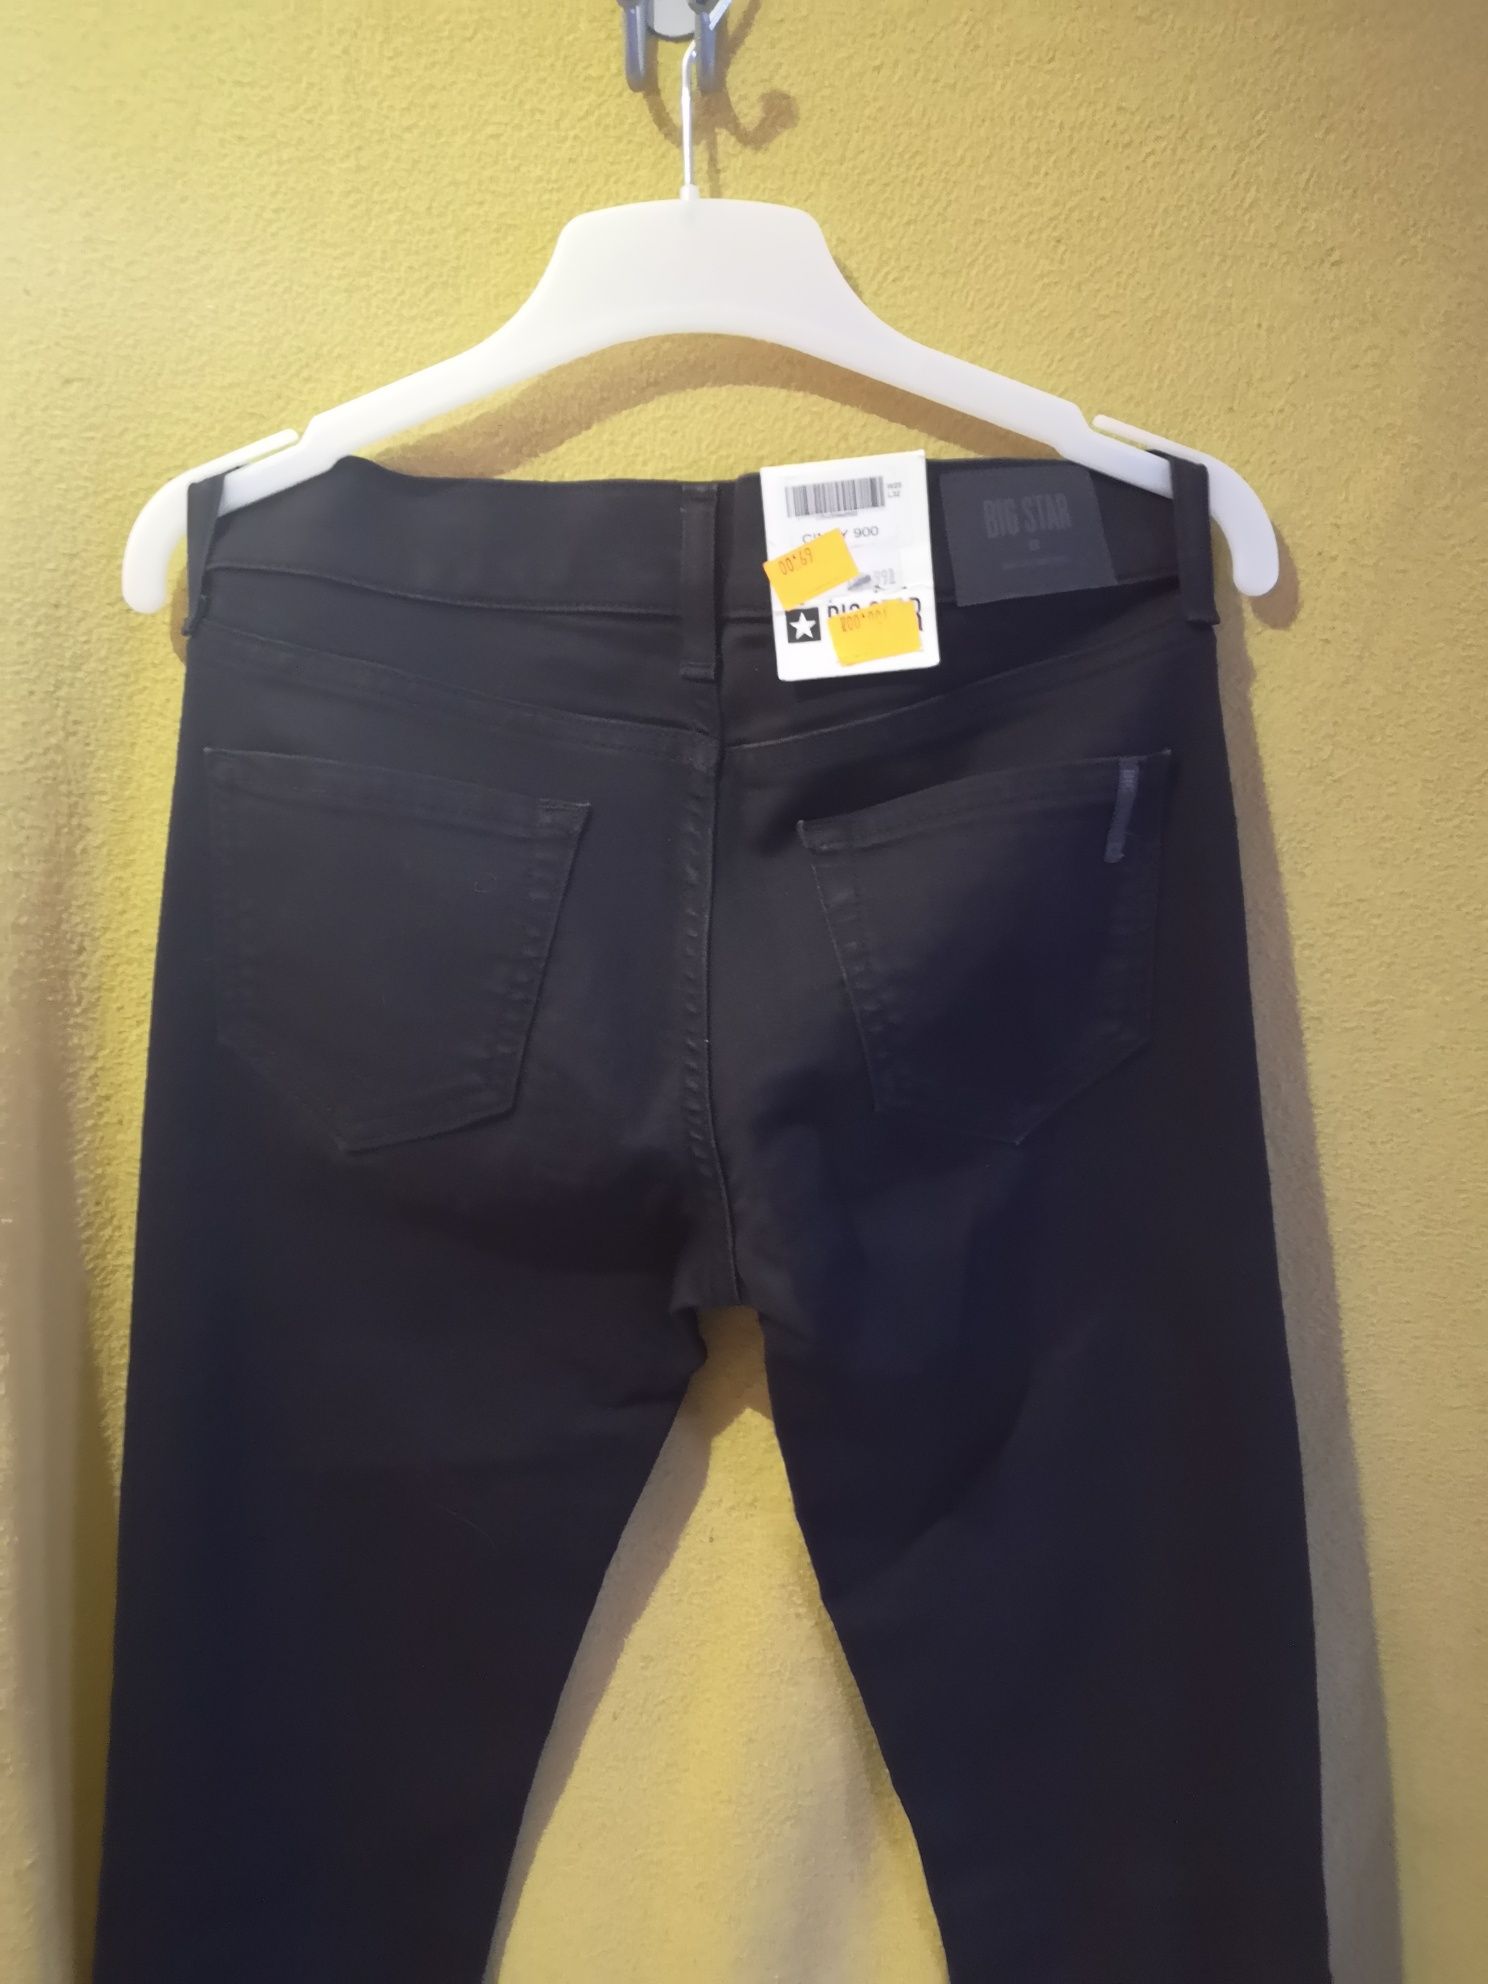 WYPRZEDAŻ!!! Spodnie jeans big star dużo rozmiarów Nowe